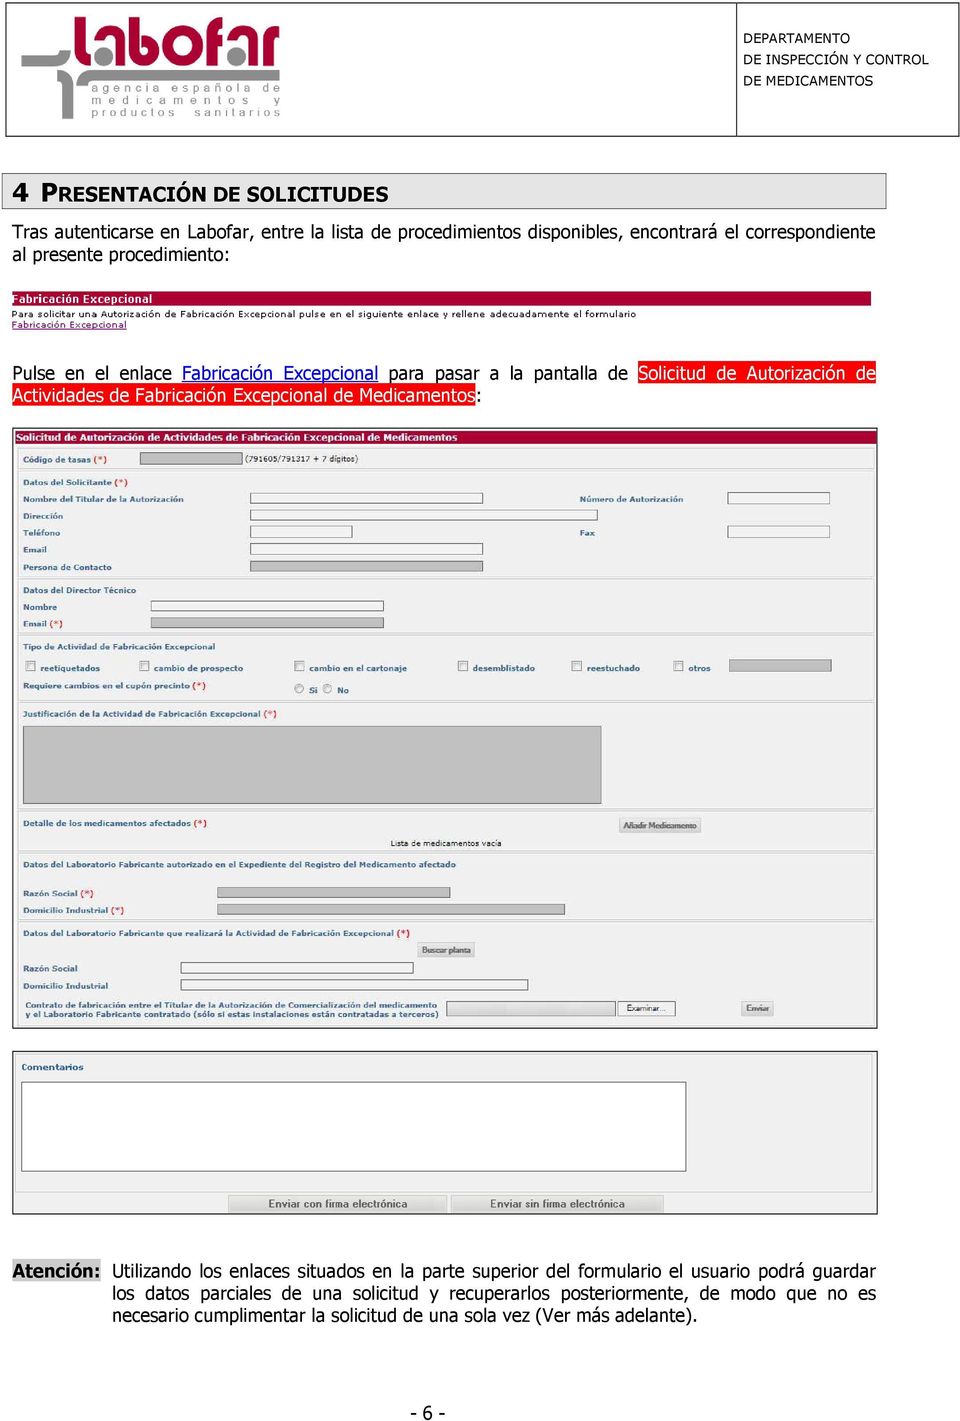 Fabricación Excepcional de Medicamentos: Atención: Utilizando los enlaces situados en la parte superior del formulario el usuario podrá guardar